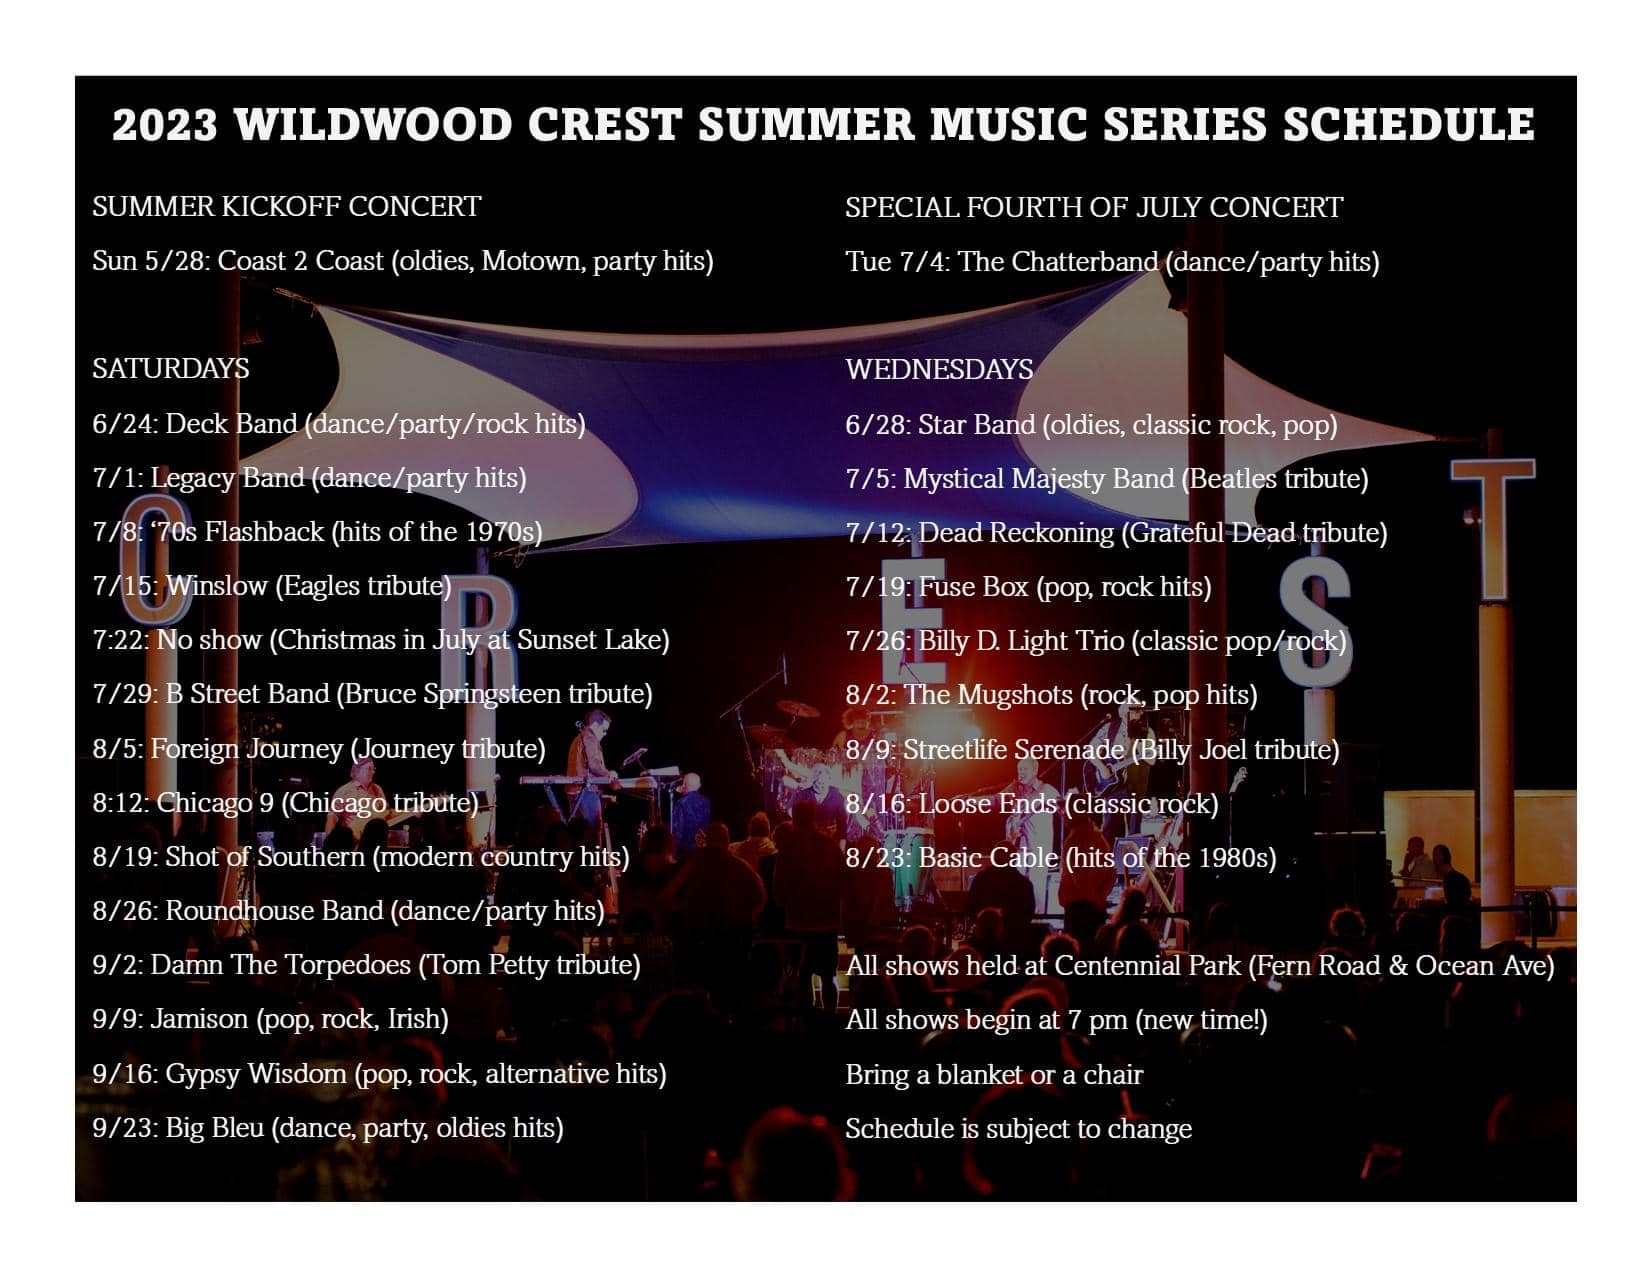 2023 Wildwood Crest Summer Concert Lineup Released TERESA DIPESO